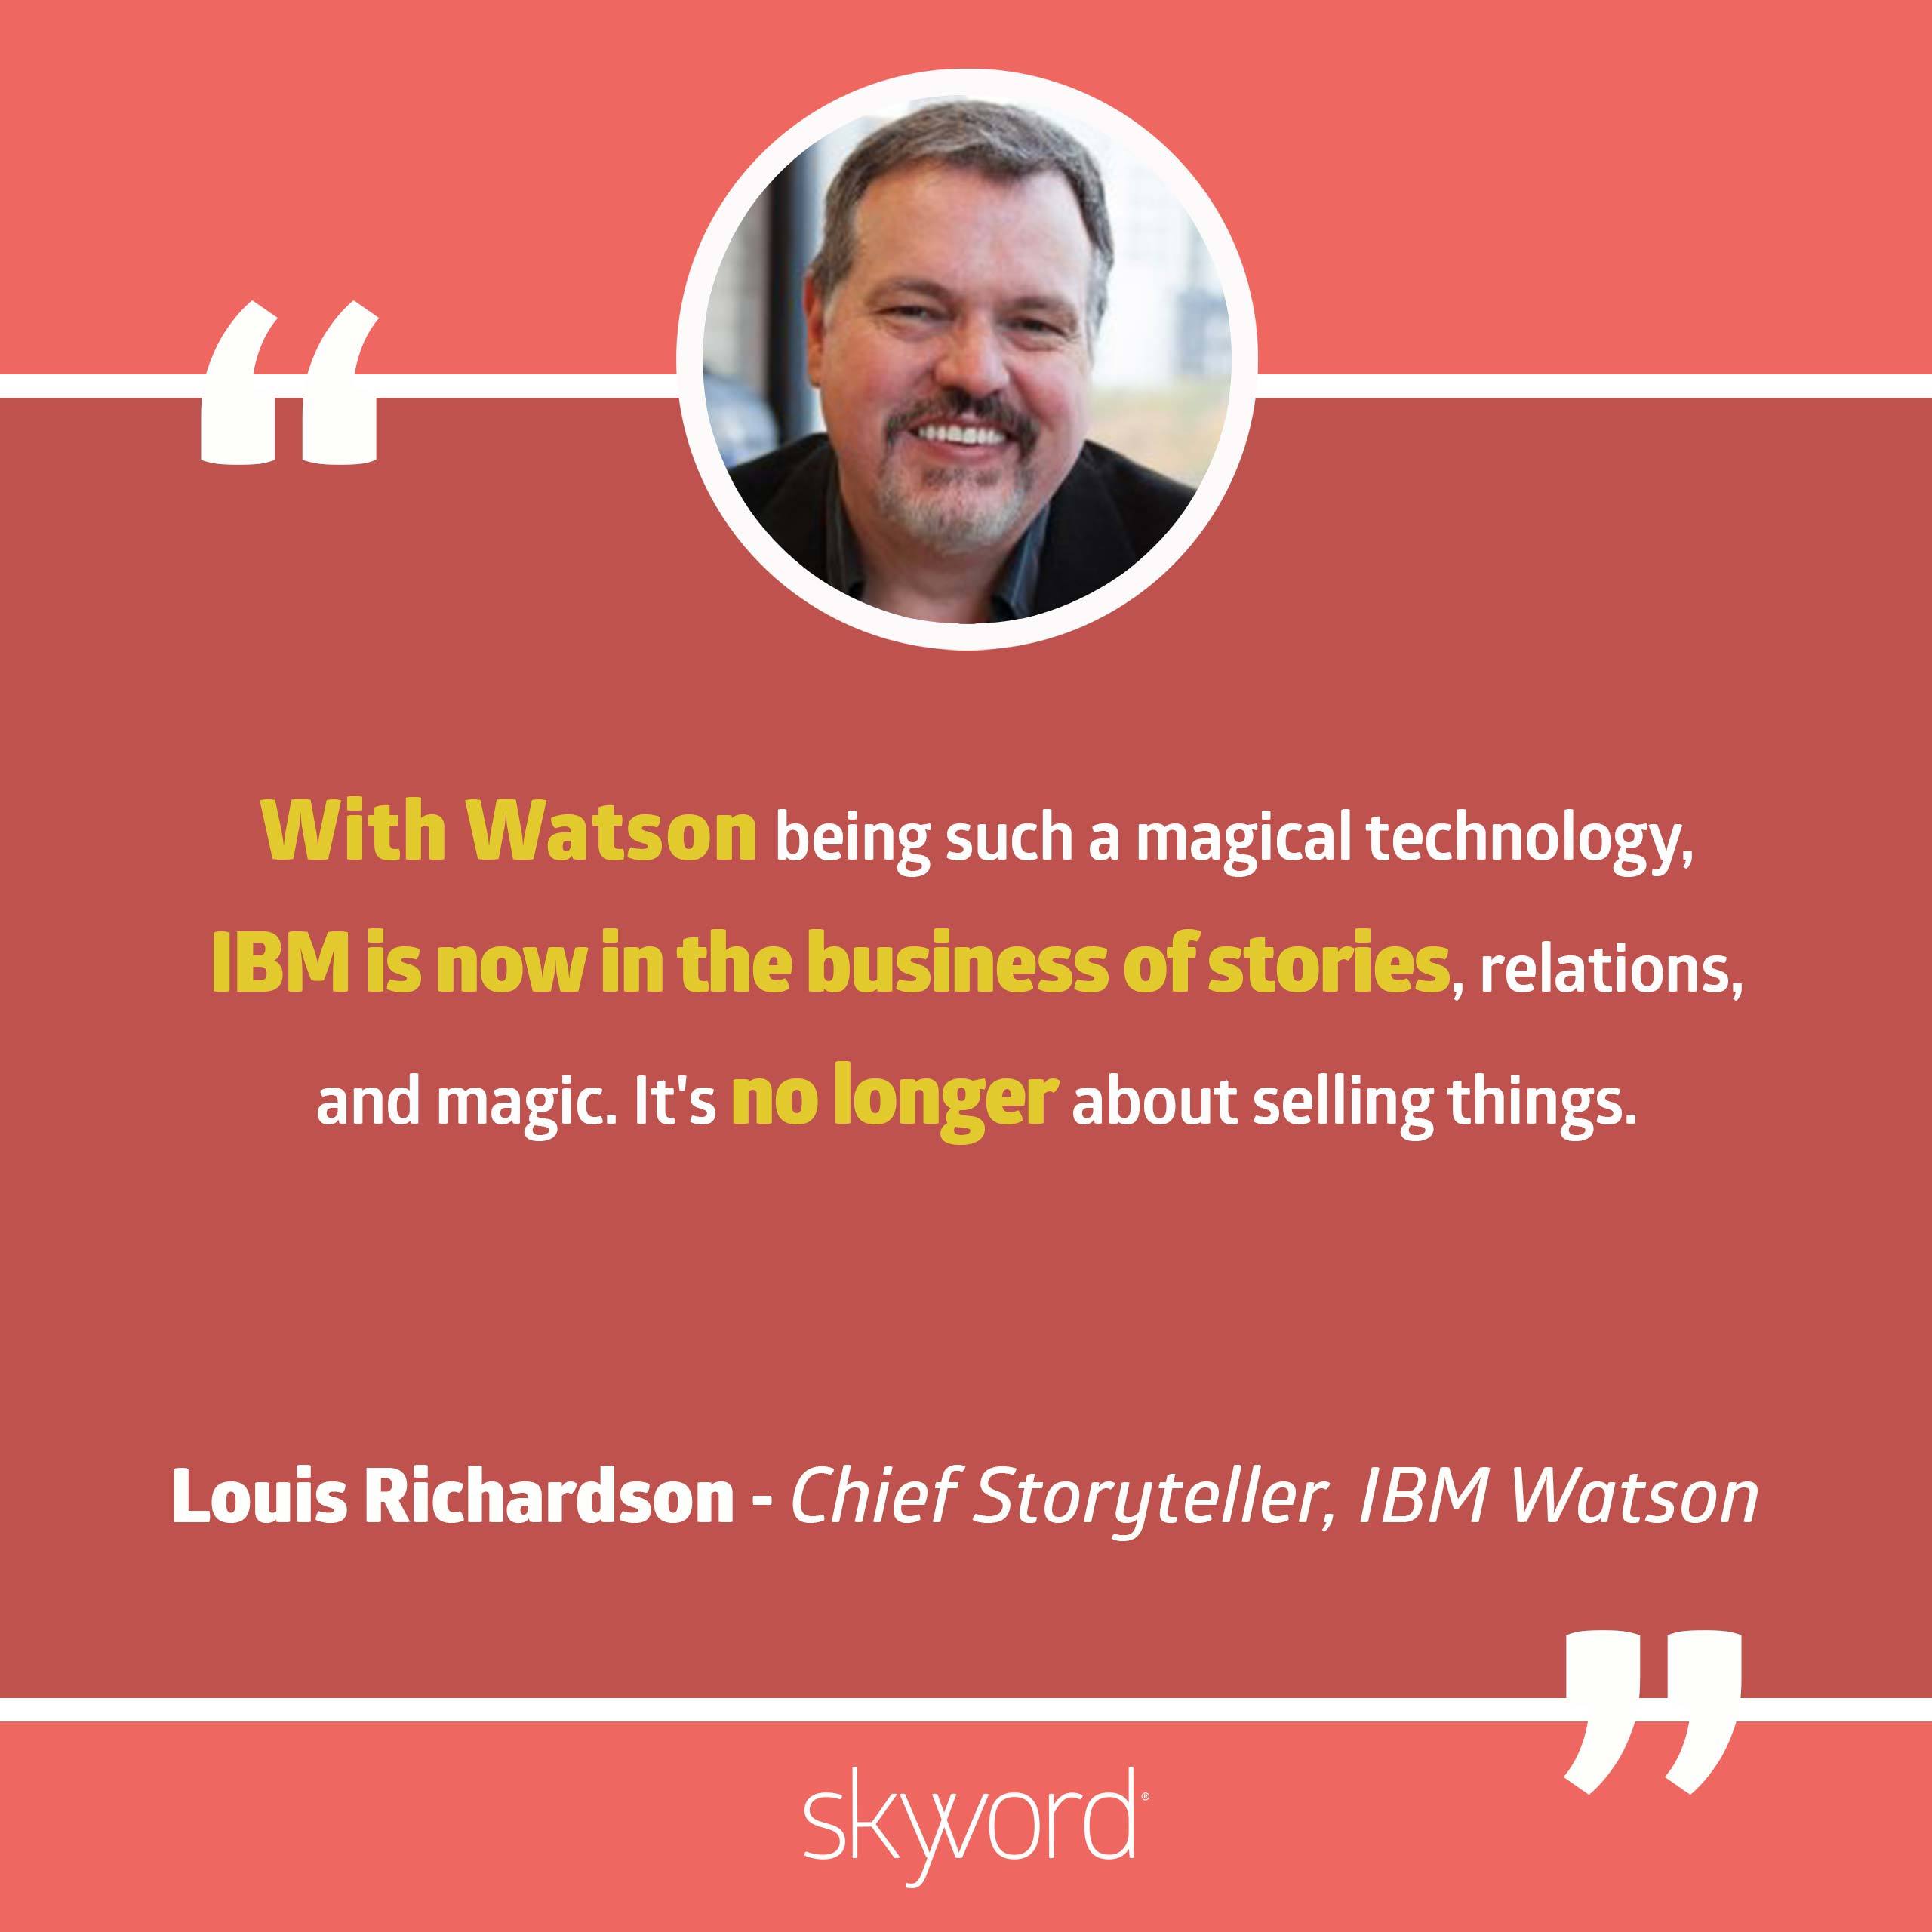 Louis Richardson, Chief Storyteller, IBM Watson